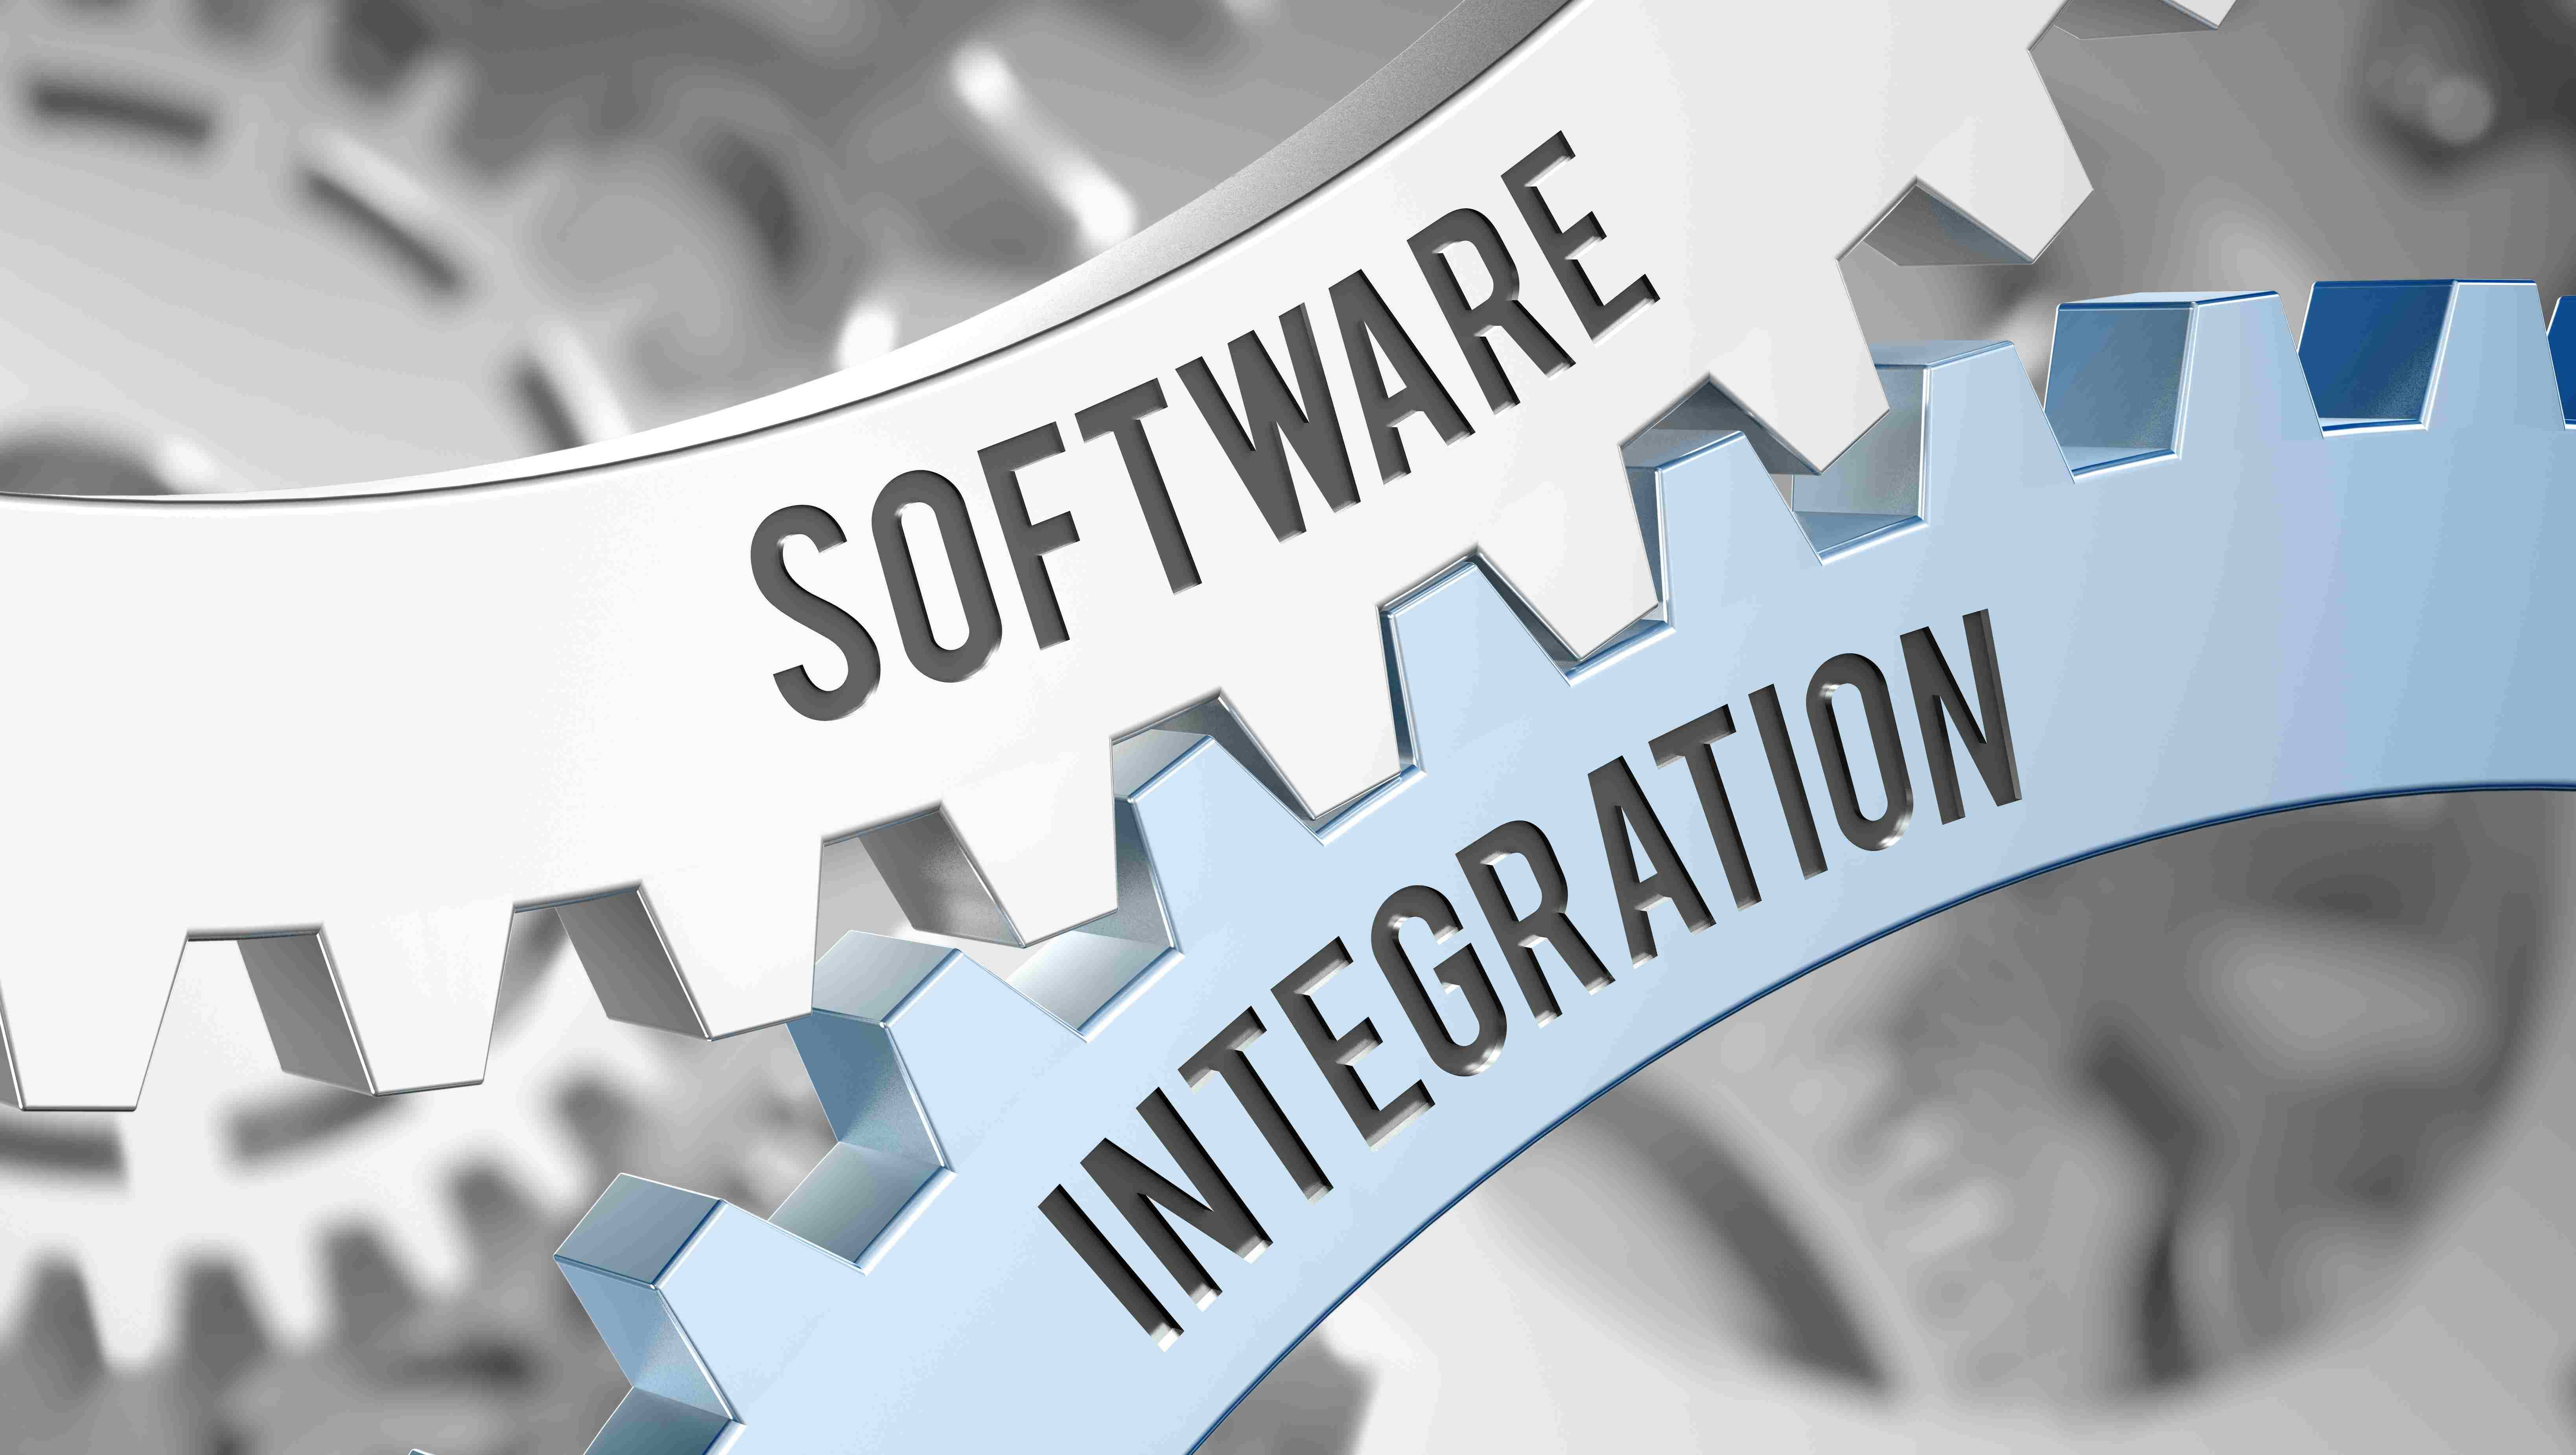 Software intergration